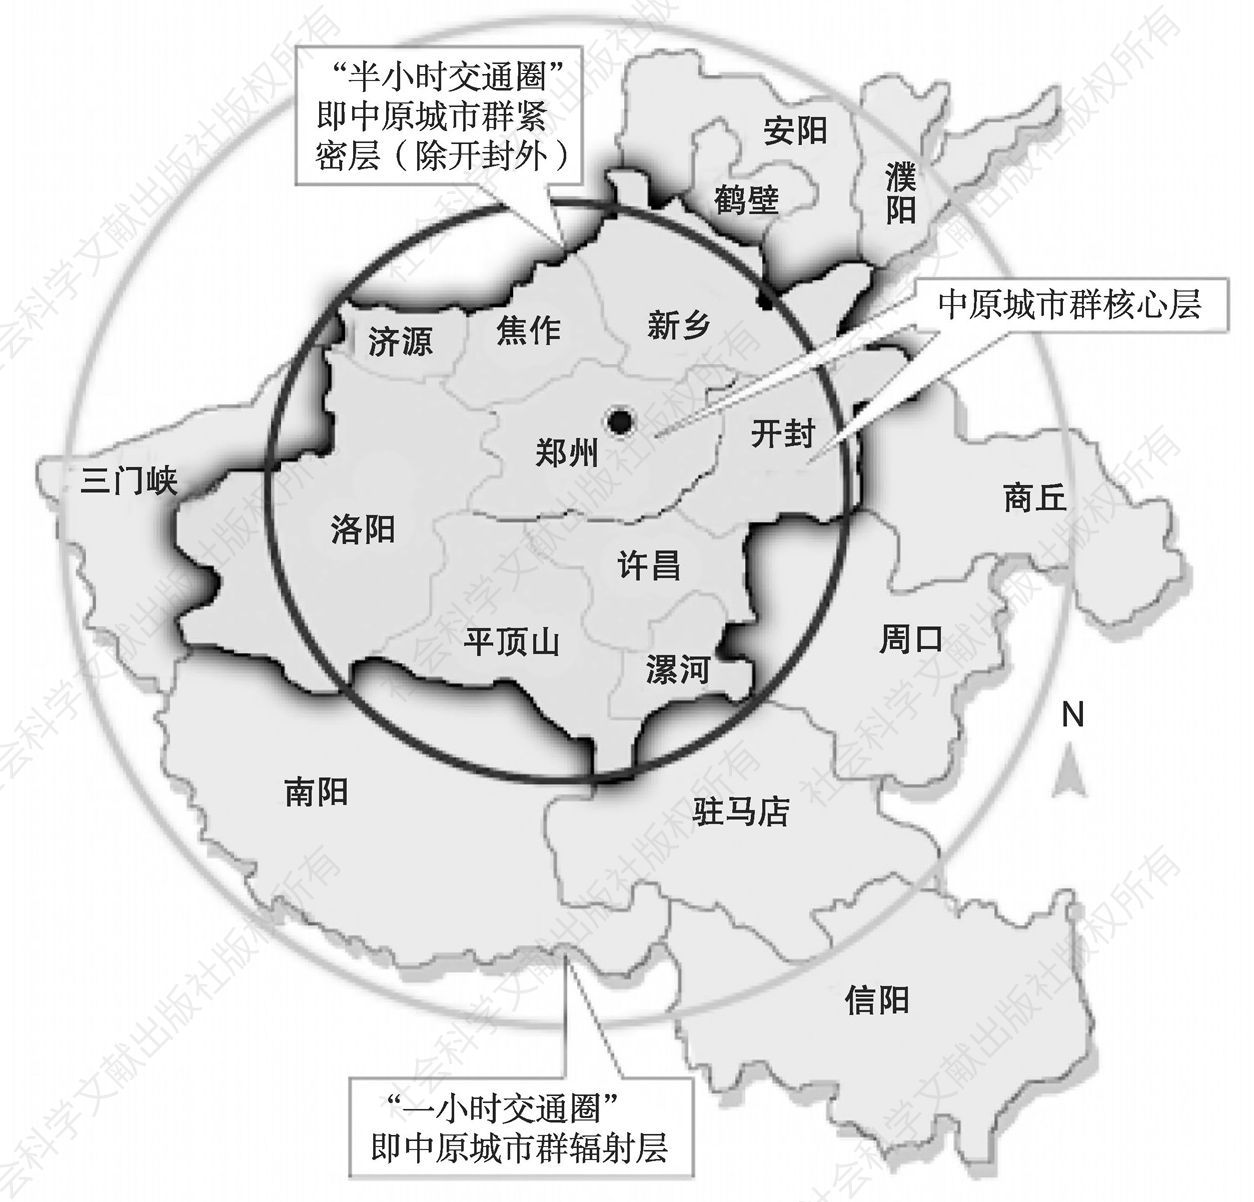 图3 中原城市群辐射网路